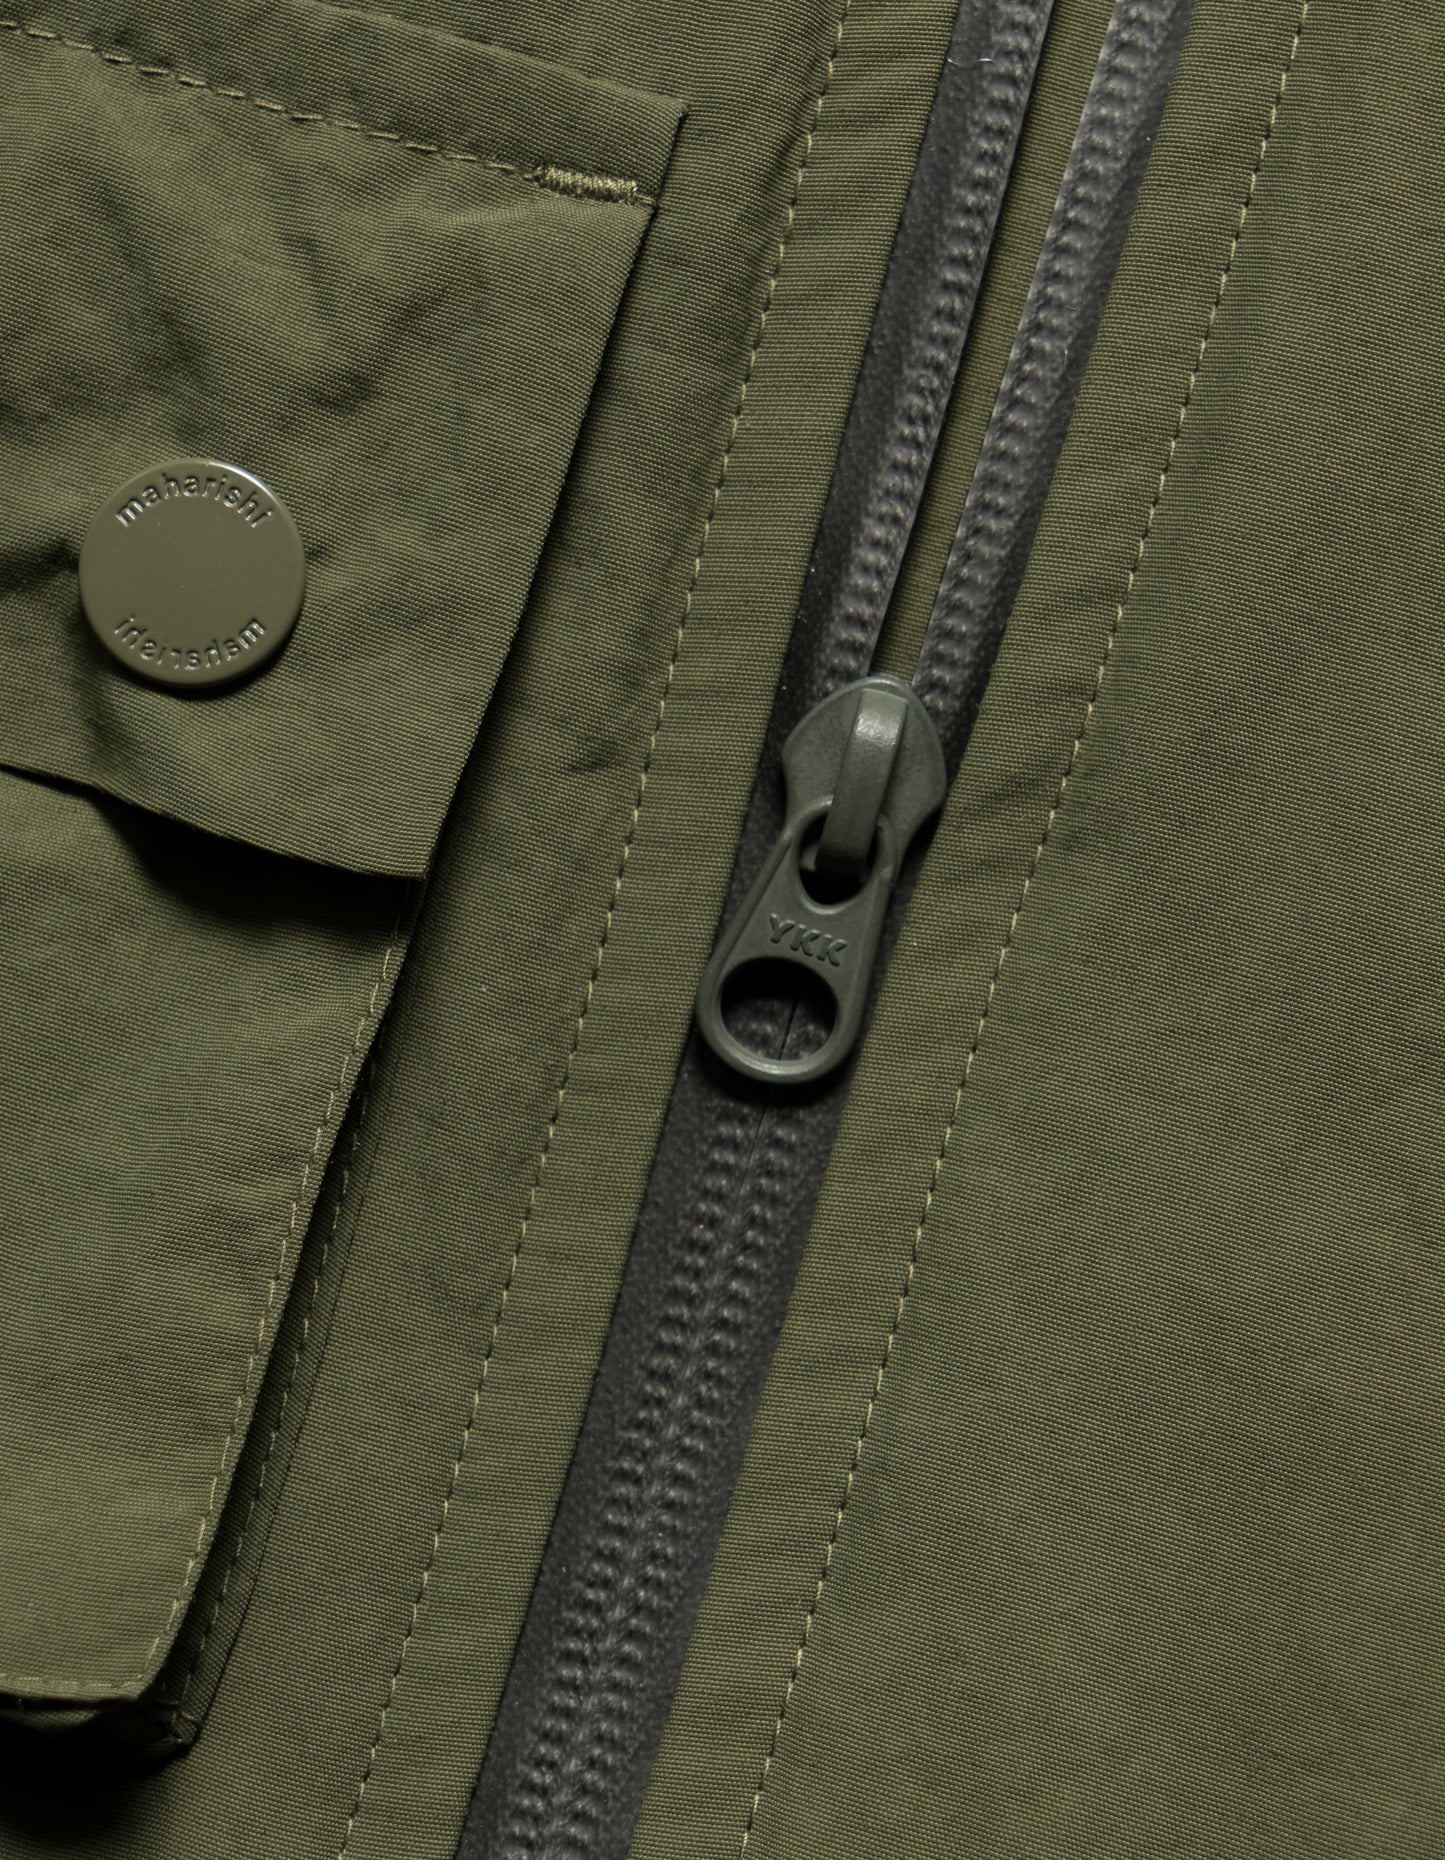 5038 Veg Dyed Tech Cargo Vest Olive